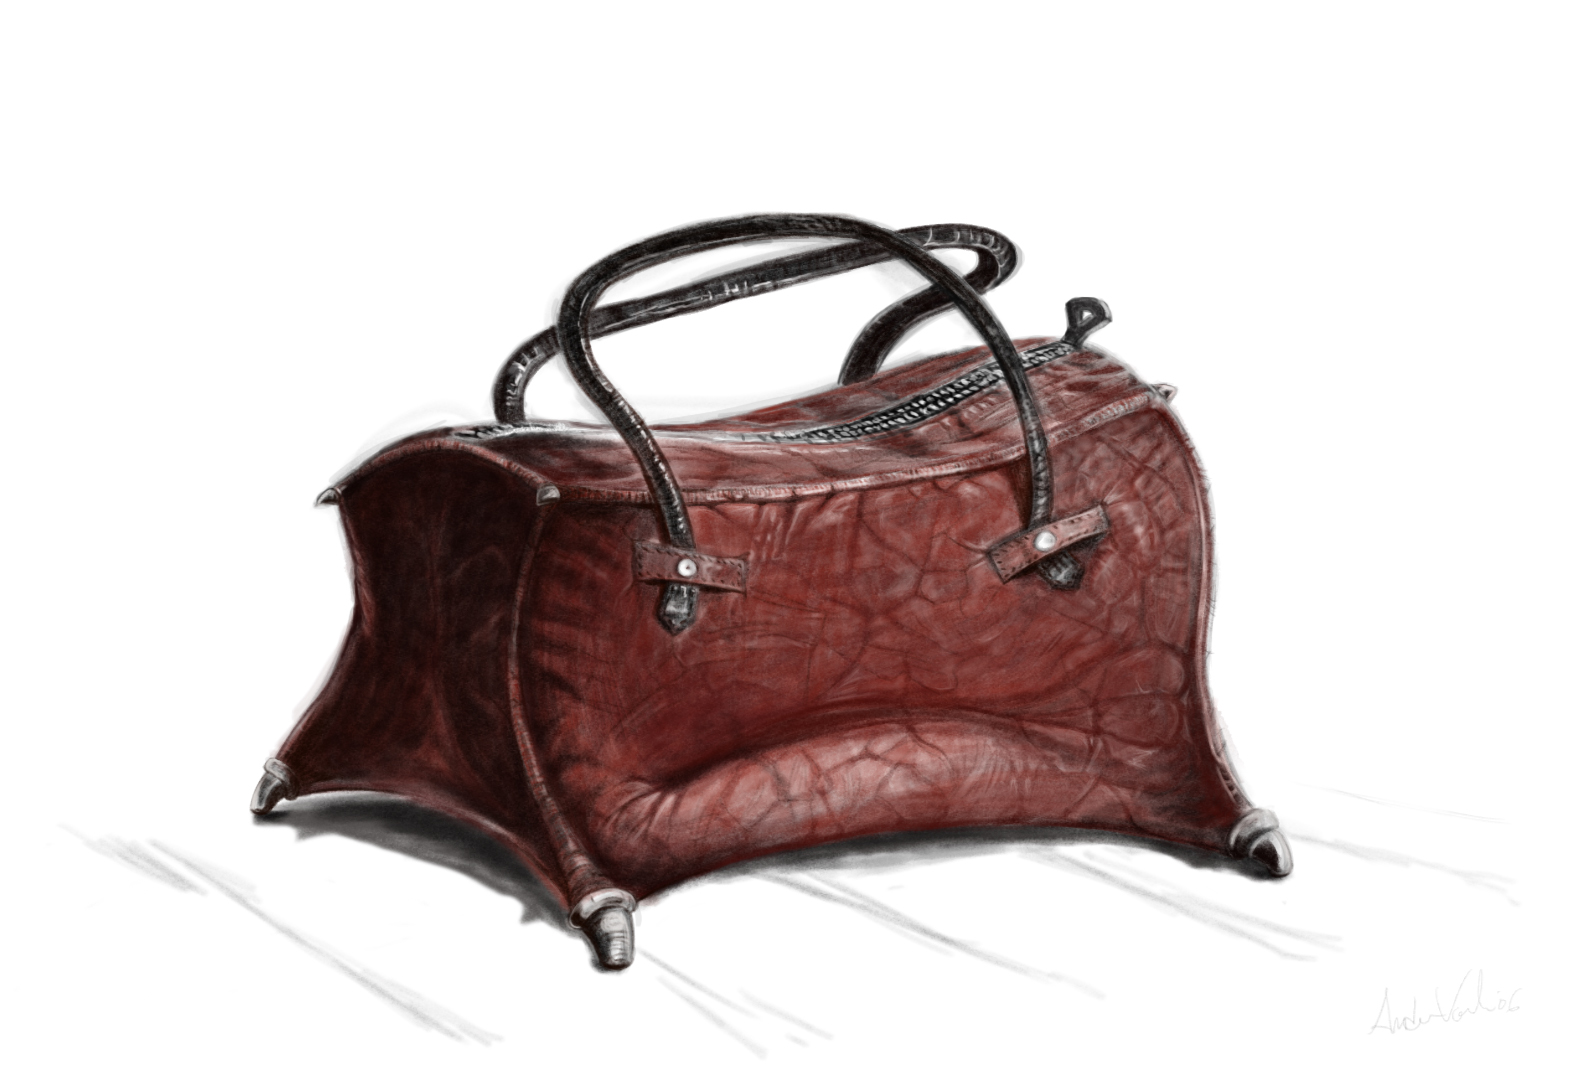 Devil Bag design